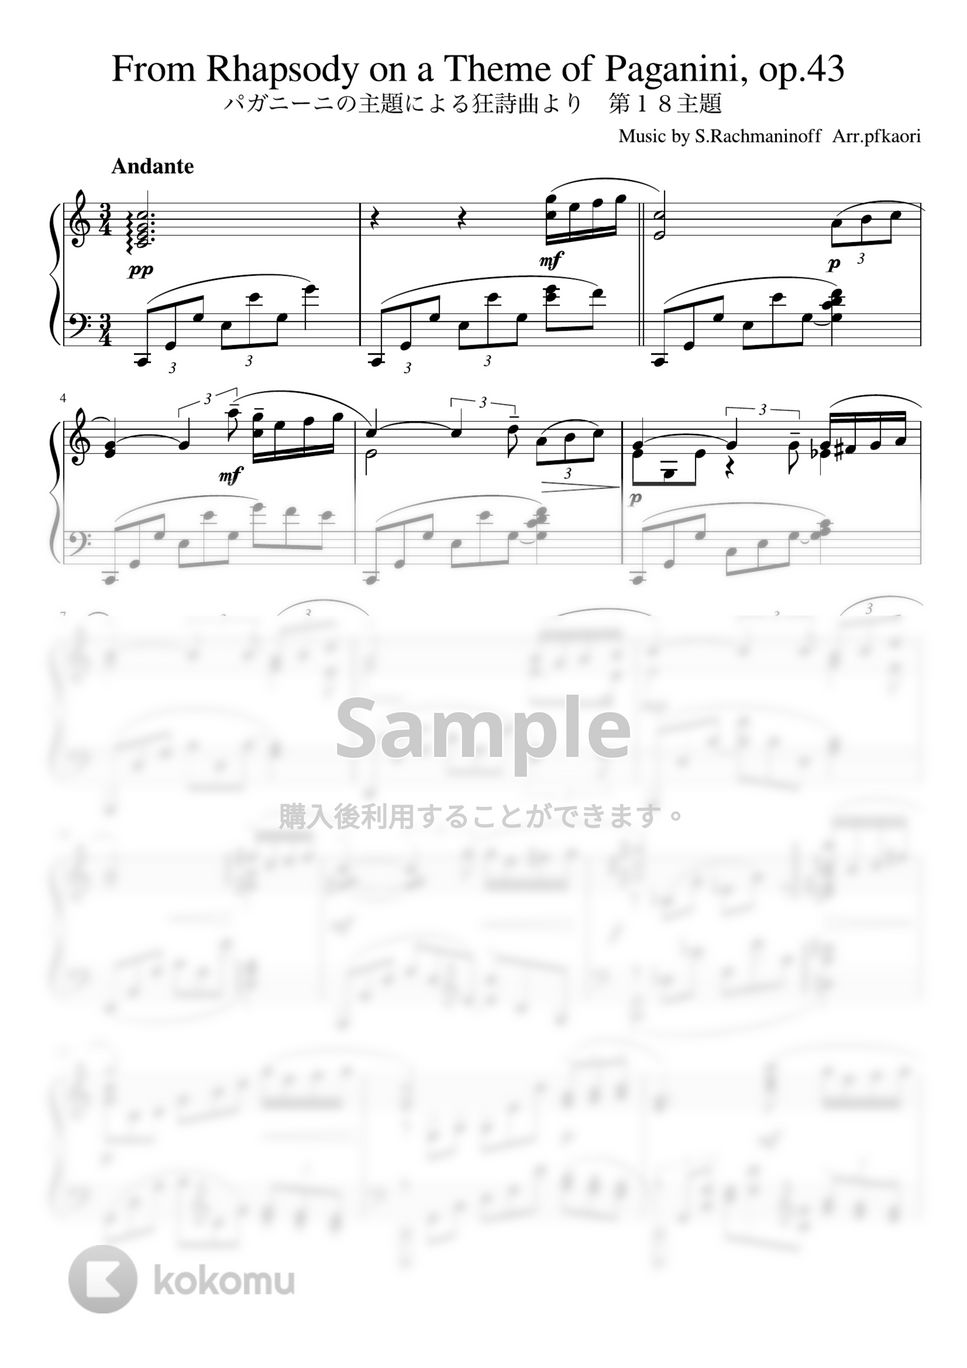 ラフマニノフ - パガニーニの主題による狂詩曲より第18変奏 (Cdur・ピアノソロ 中〜上級) by pfkaori